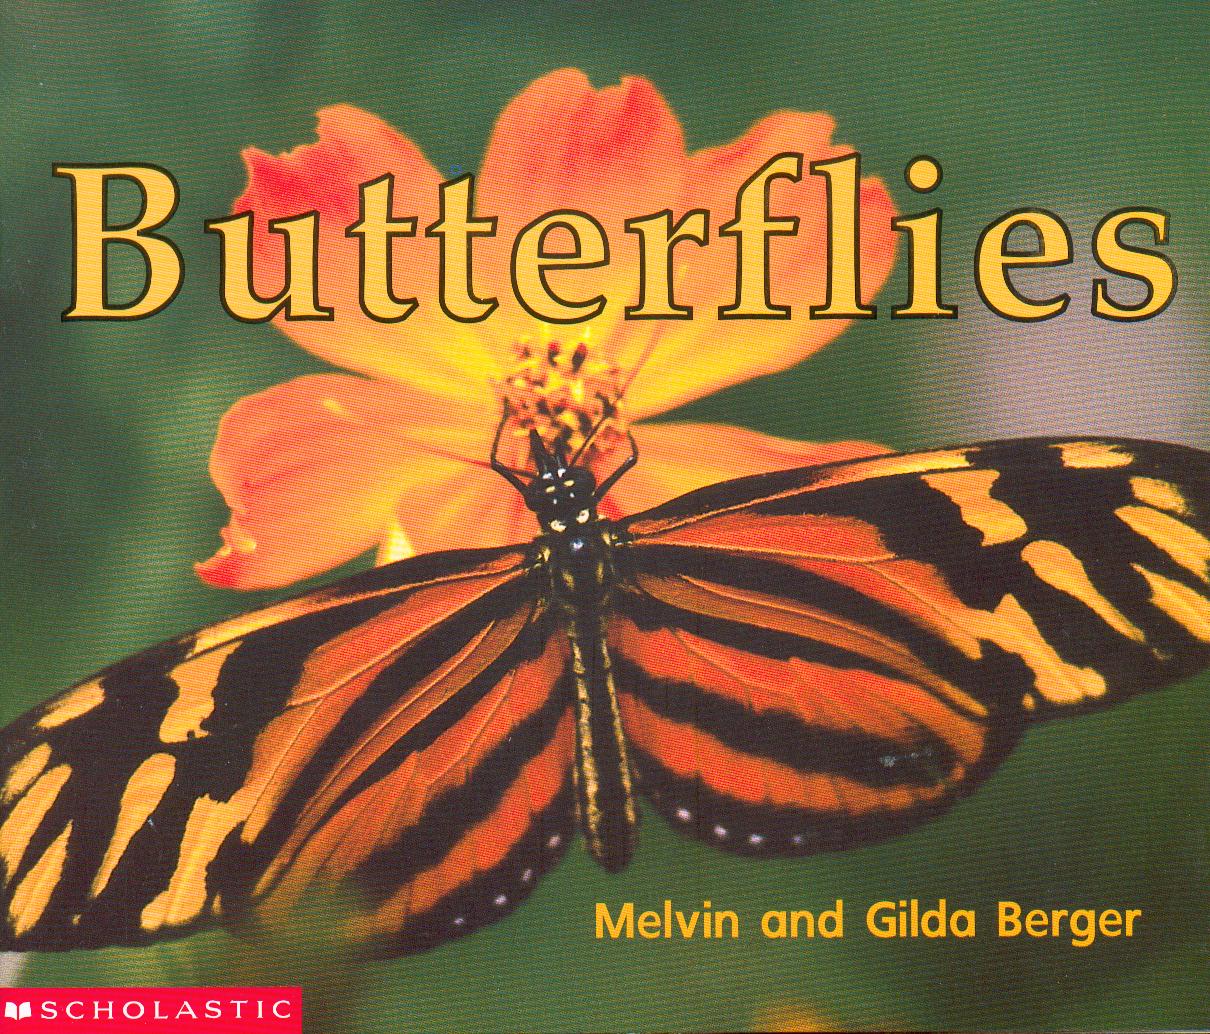 Butterflies / Melvin and Gilda Berger.